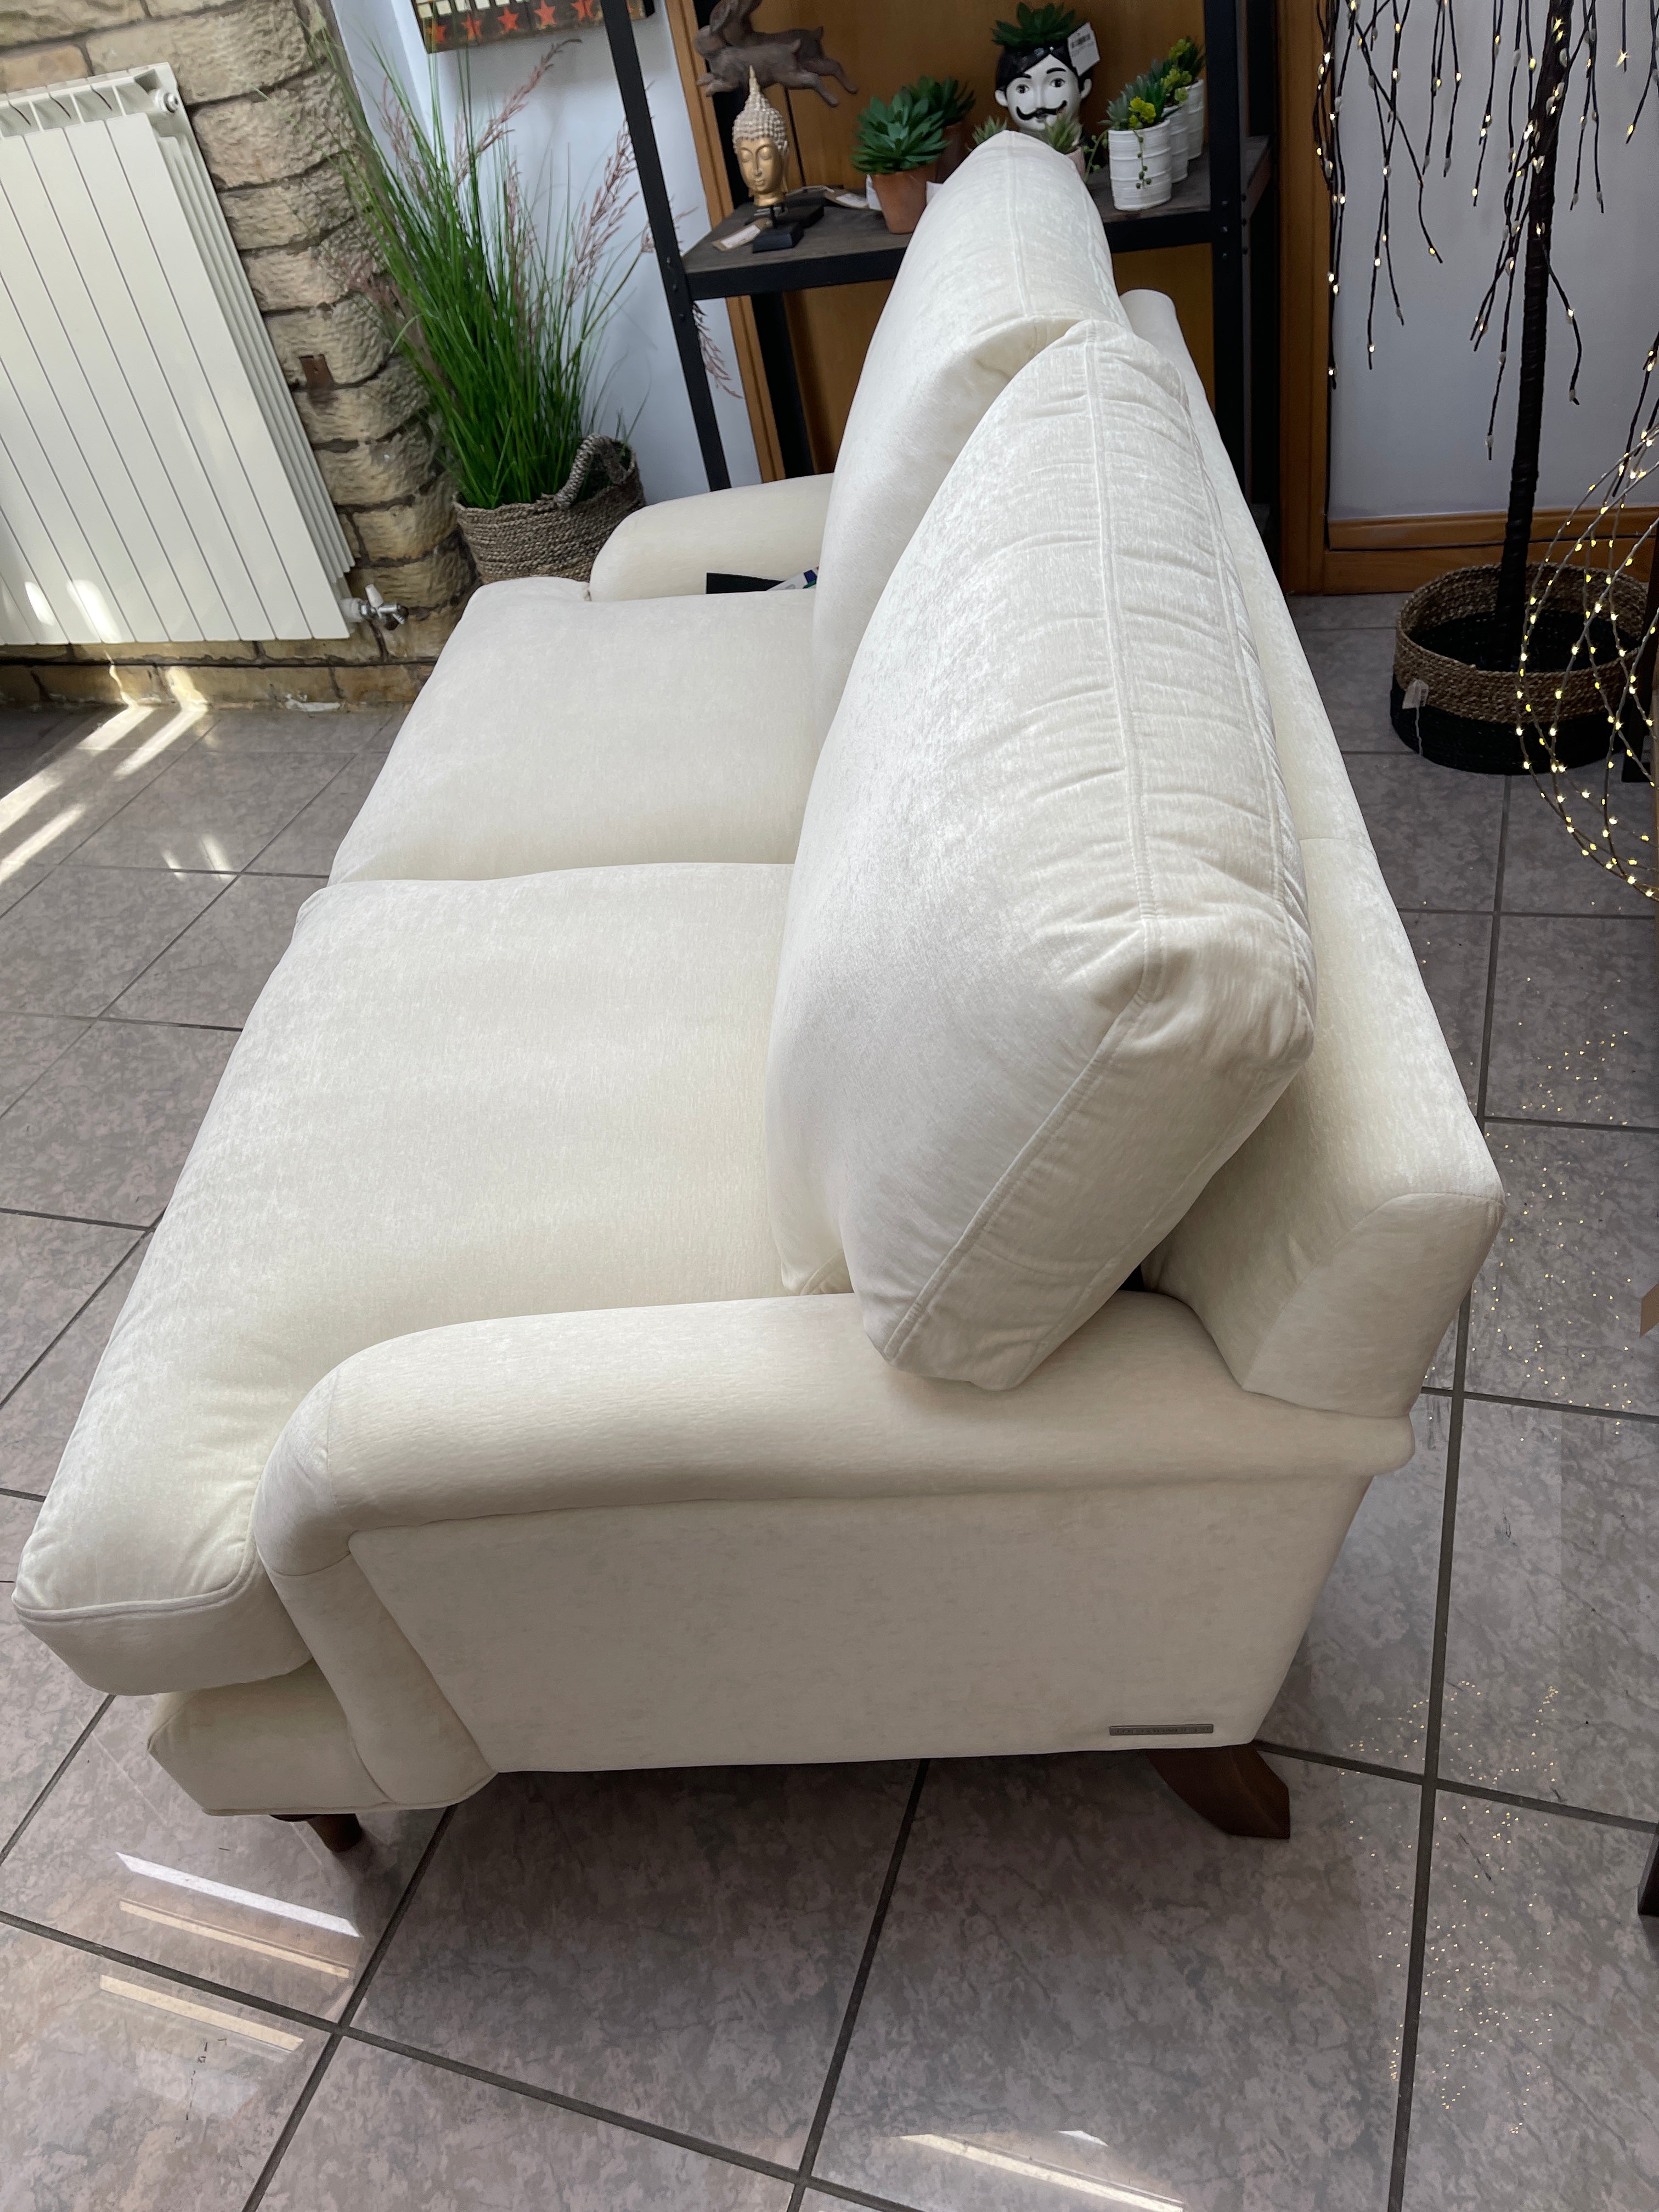 Rose 2 seater standard back sofa in French linen velvet